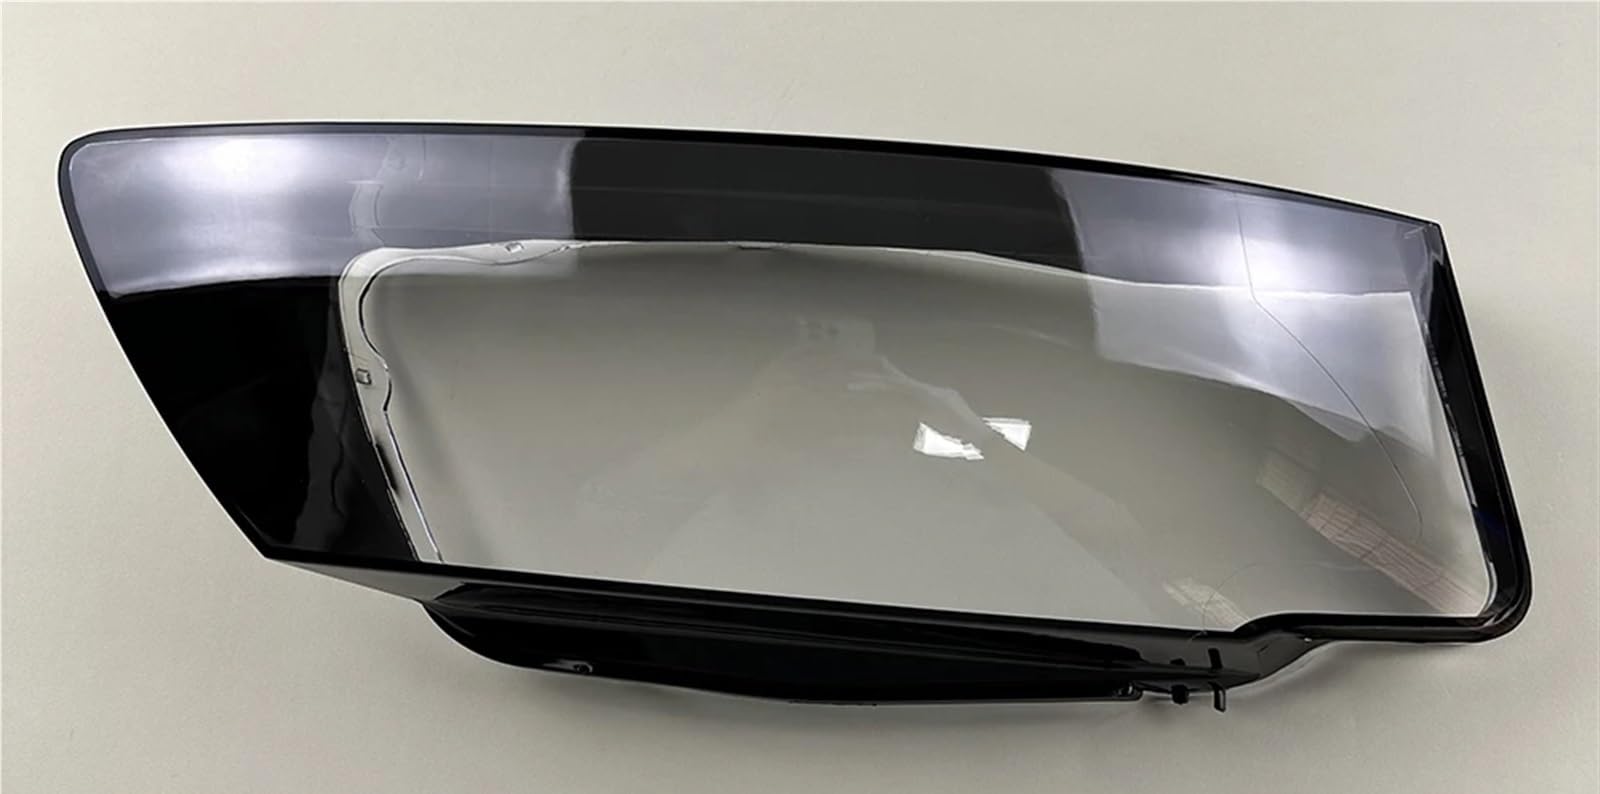 LFDTO Passend for Audi A5 2008 2009 2010 Autoscheinwerfer-Abdecklinse Glasschale Vorne Scheinwerferkappen Transparenter Lampenschirm Auto-Lichtlampengehäuse(1PCS right side) von LFDTO